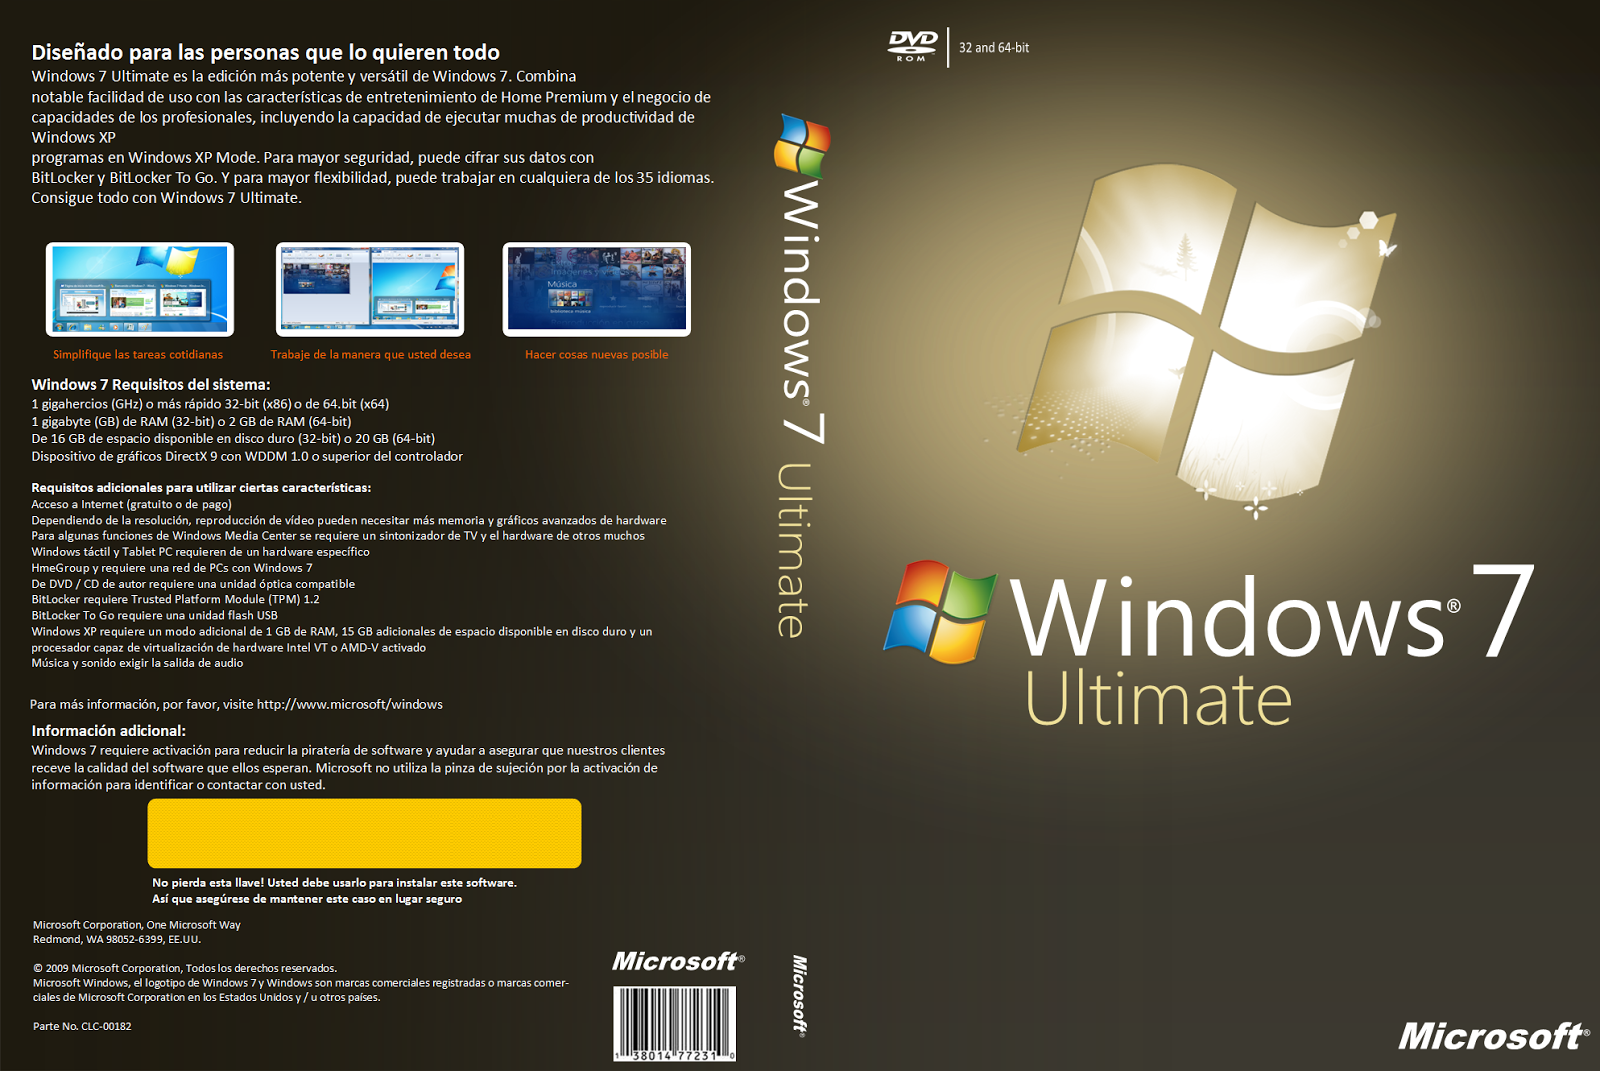 Download windows 7 ultimate 32 bit iso bittorrent hannes ostendorf kategorie c torrent